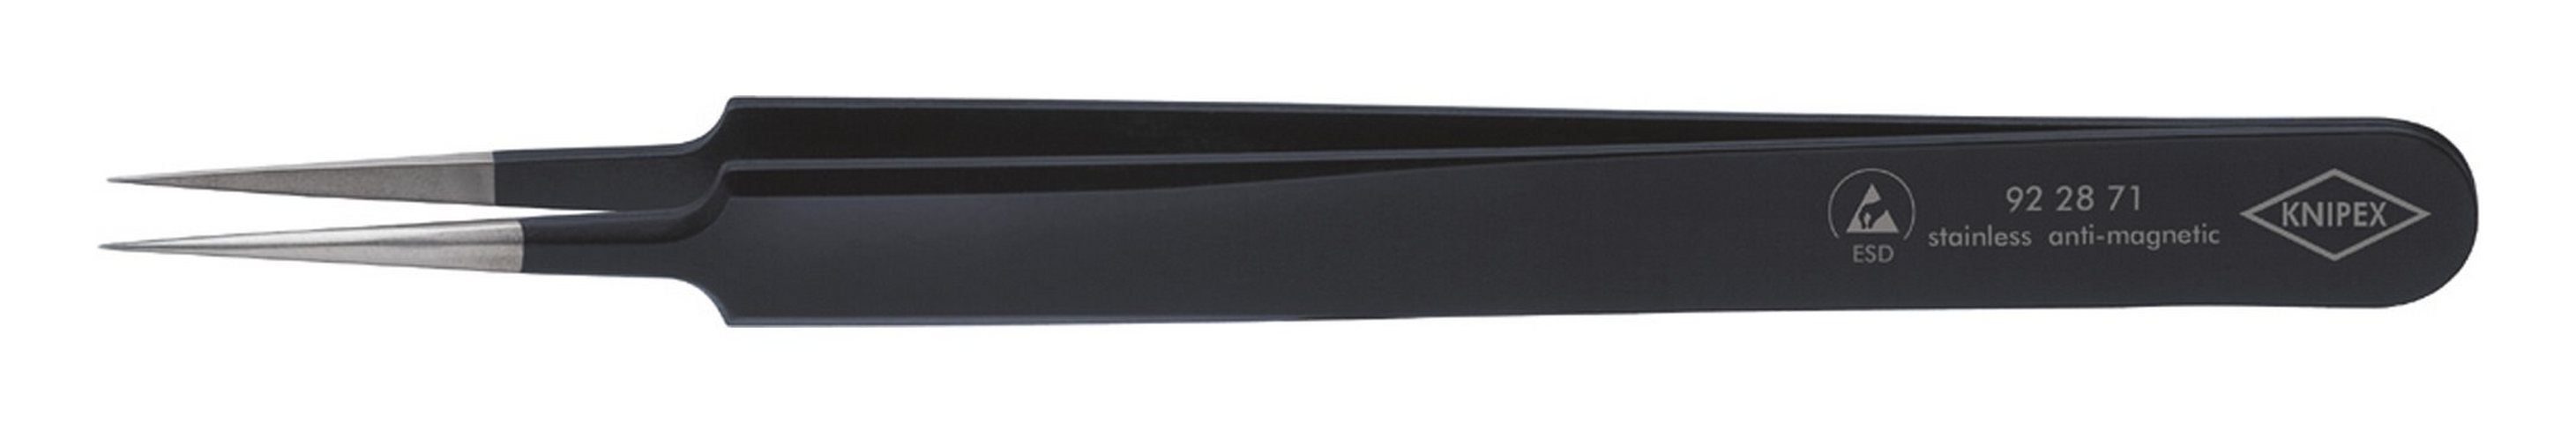 Knipex Pinzette, mm Nadelform schwarz 110 ESD